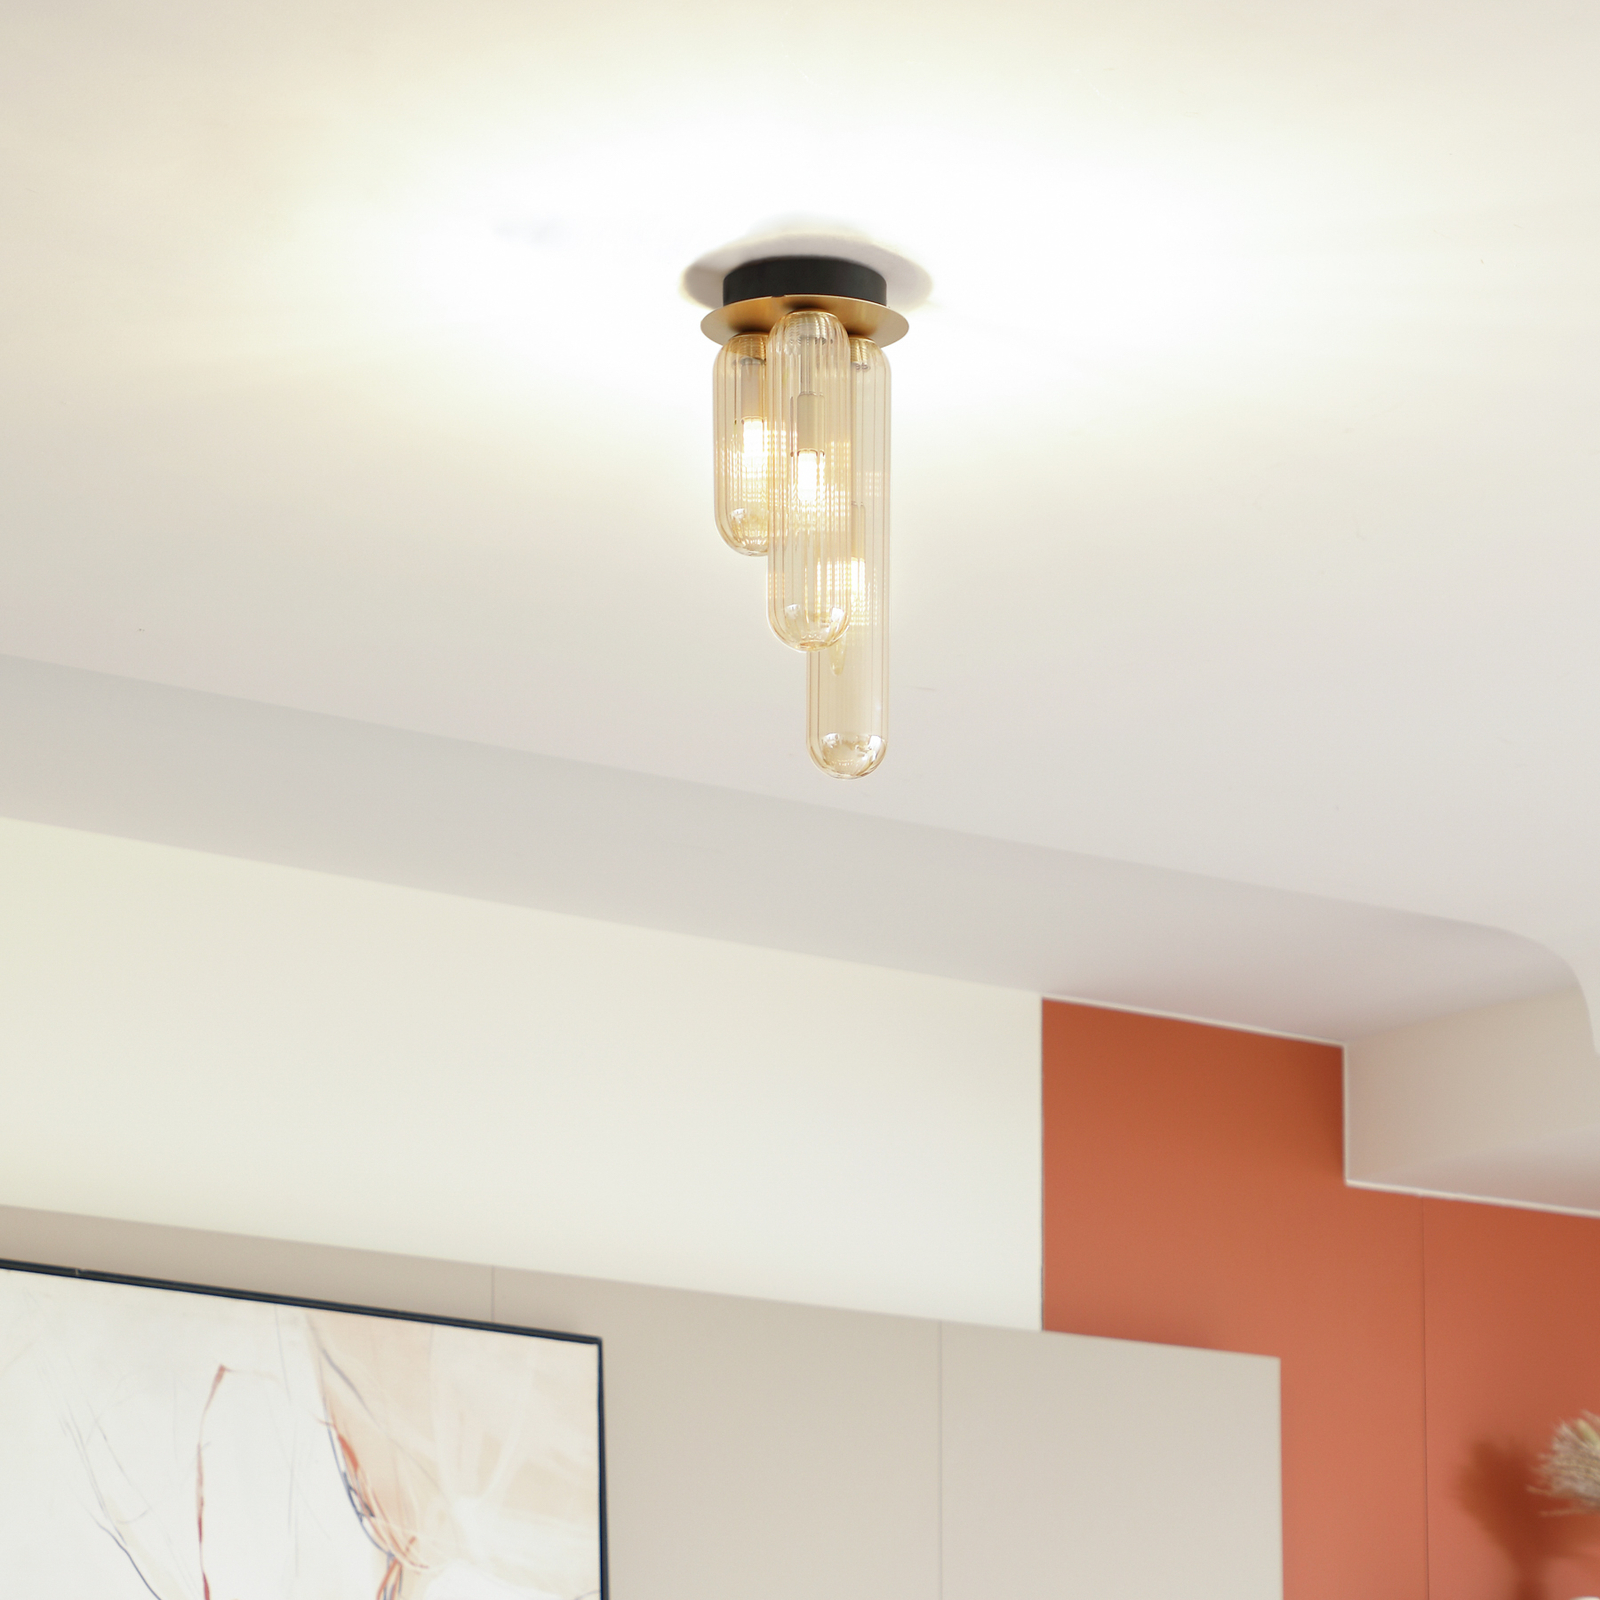 Lucande Freylin ceiling light, 3-bulb, amber, glass, 15 cm